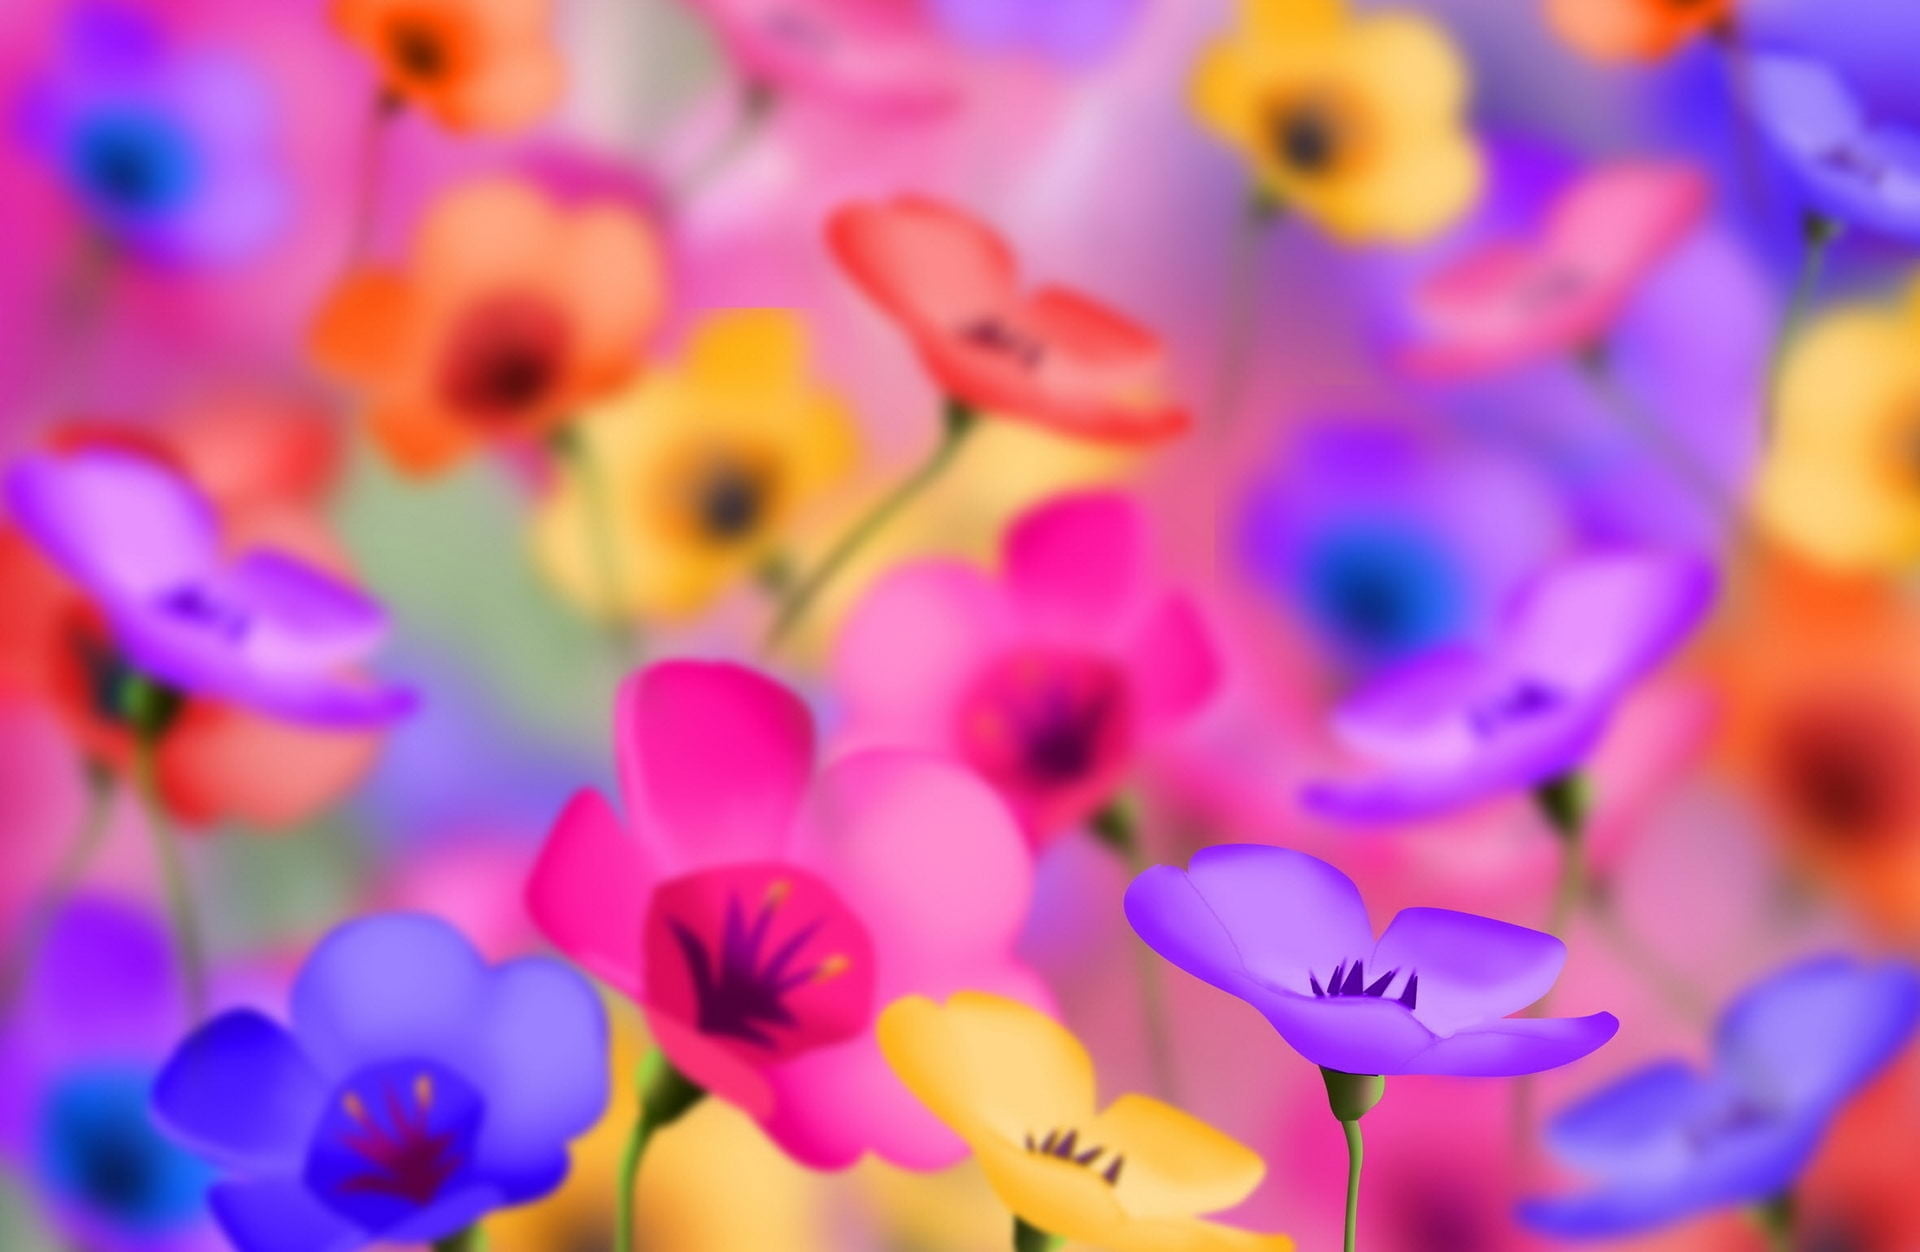 Hãy nhấn vào hình ảnh để chiêm ngưỡng những bông hoa màu hồng và vàng thanh thoát, tươi trẻ. Với sự kết hợp này, bạn chắc hẳn sẽ đón nhận một thế giới đầy màu sắc và sự tươi mới.